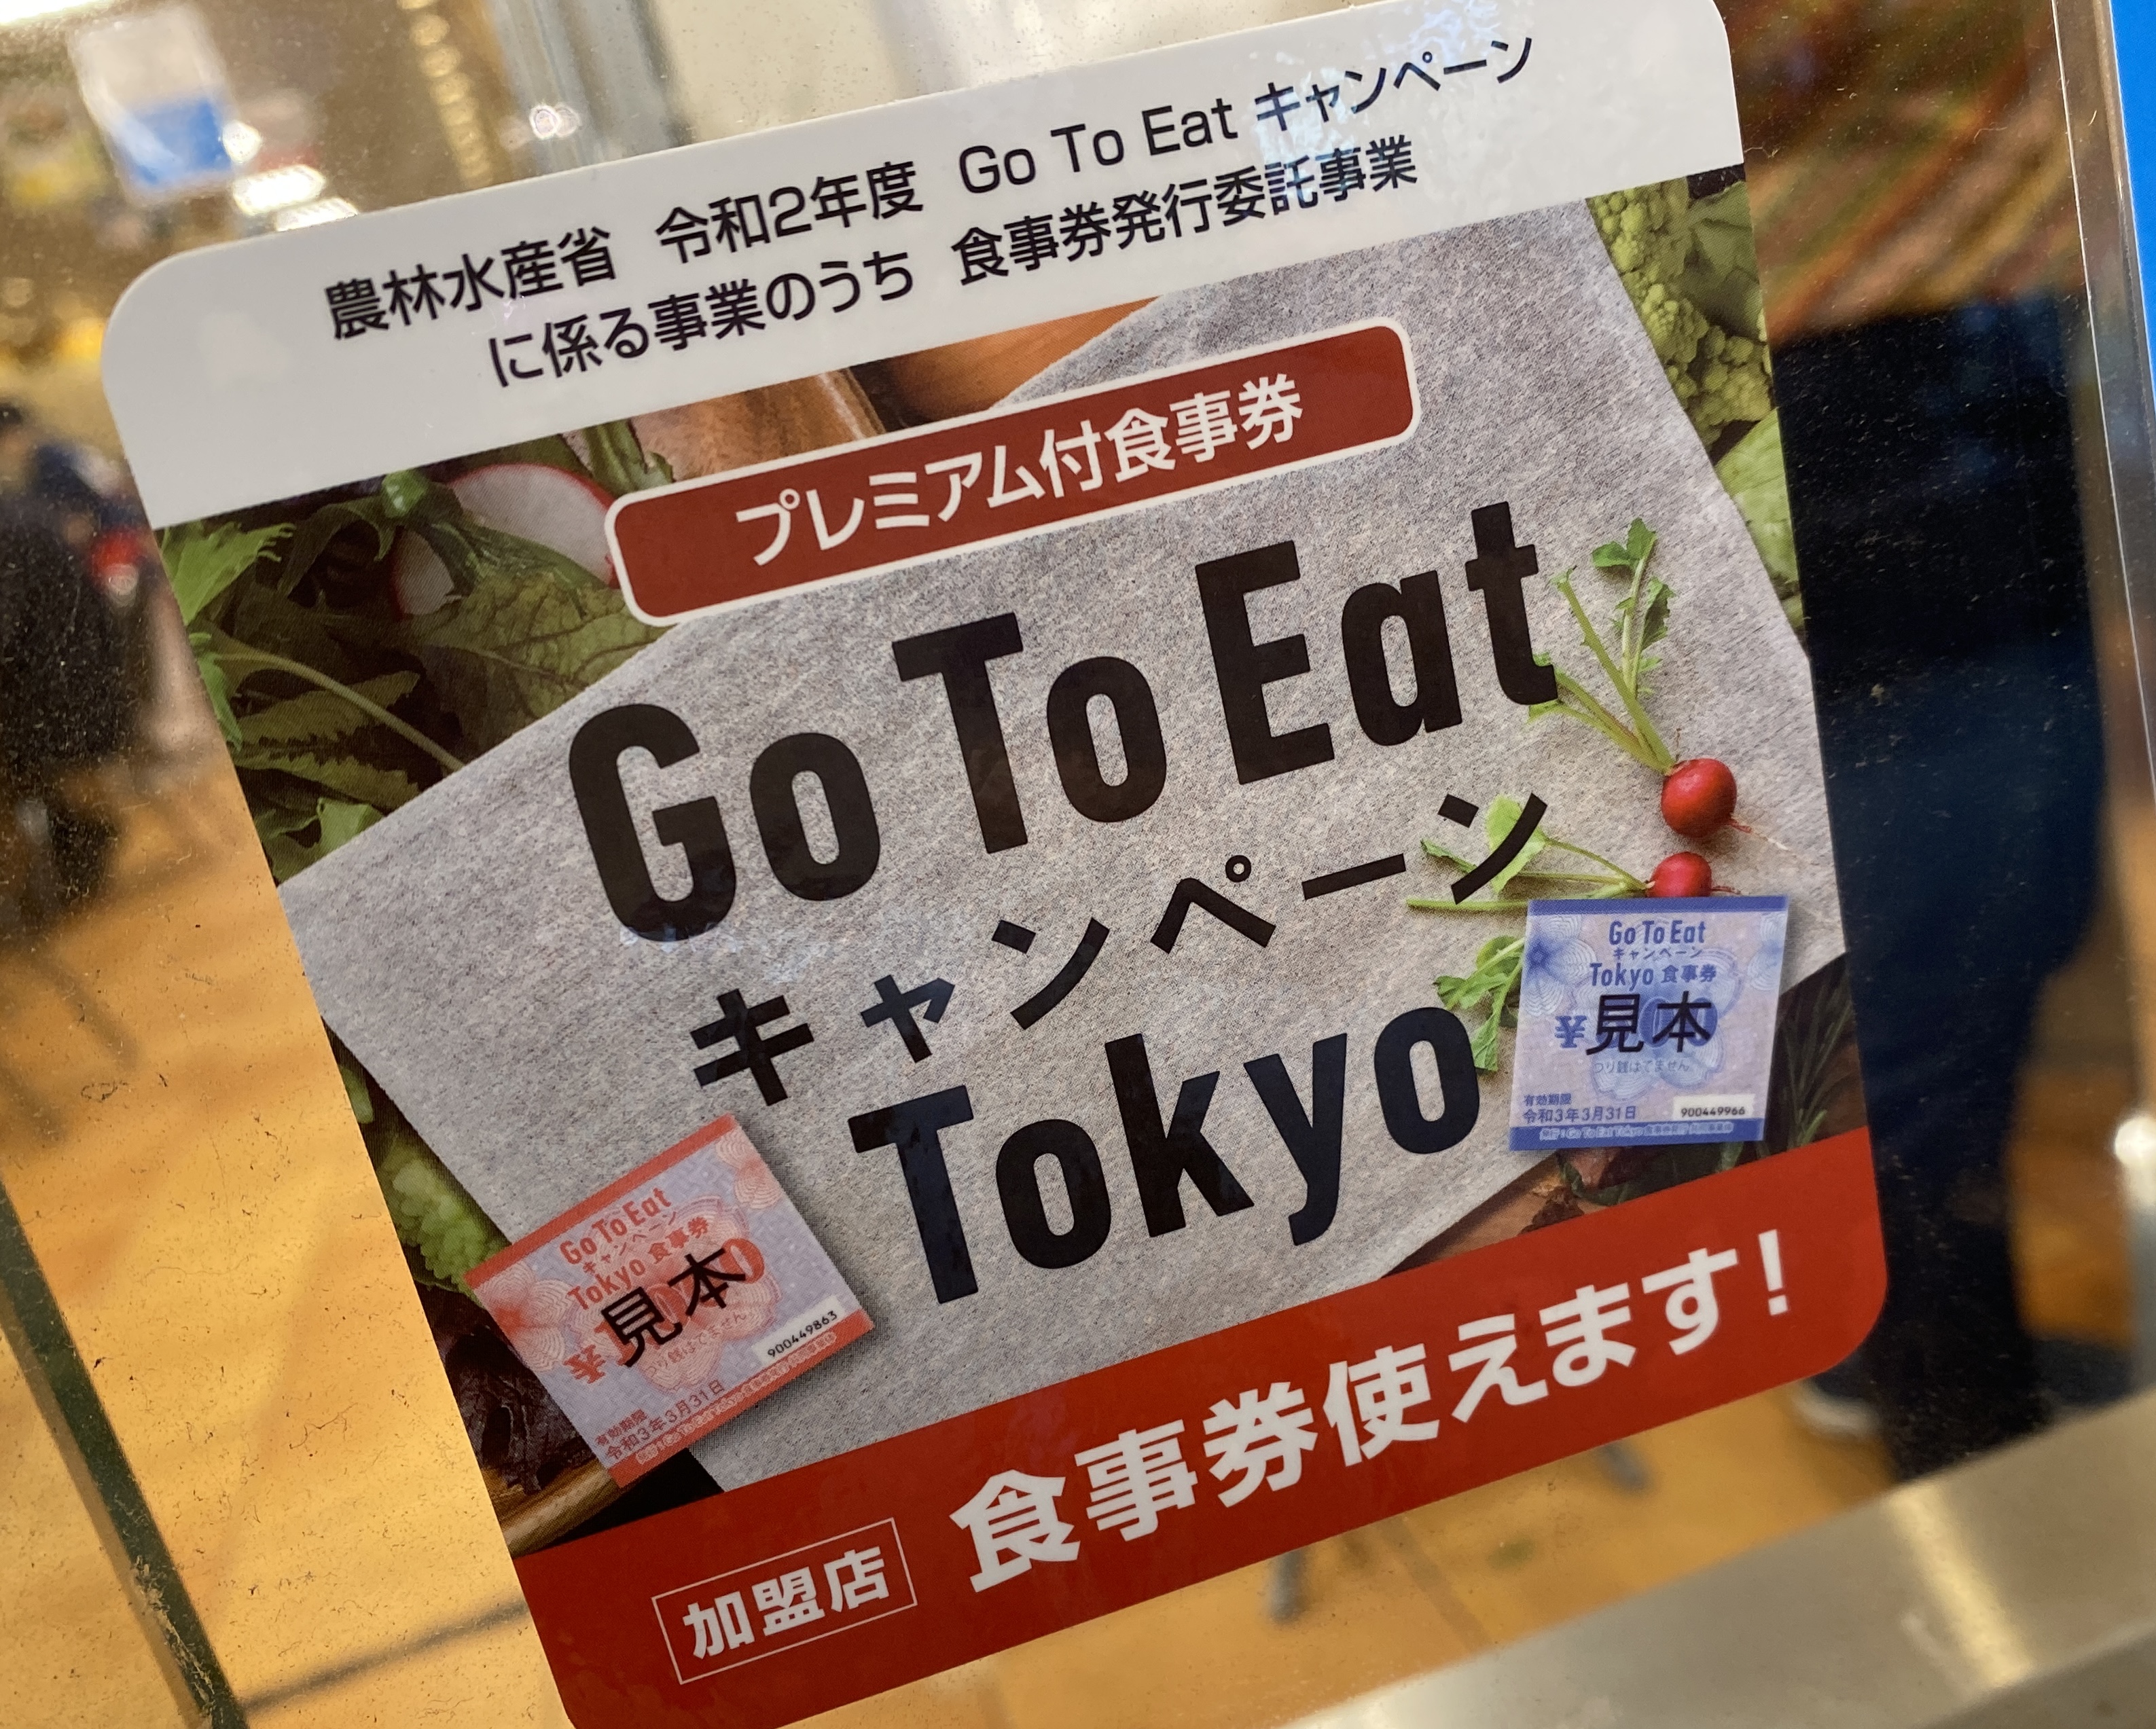 券 go 食事 to 東京 eat